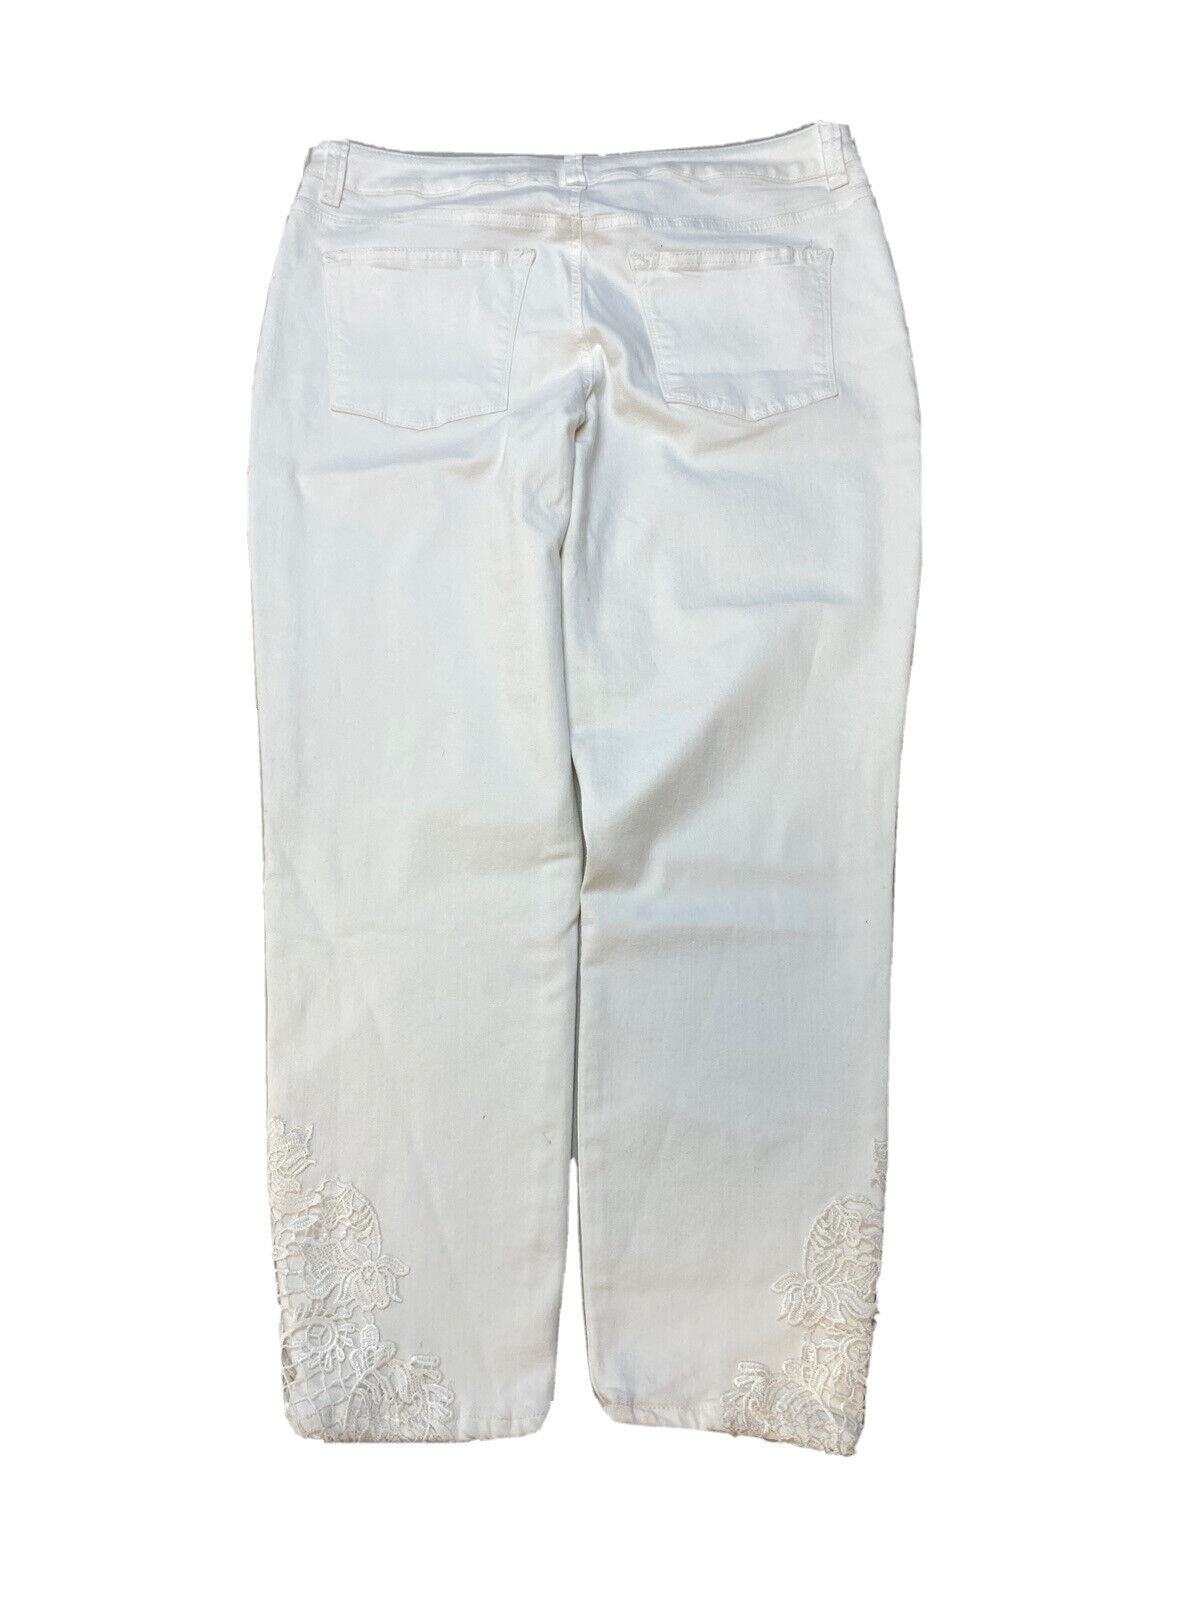 NEW Maurices Women's White Denim Stretch Skinny Jeans Sz 13/14